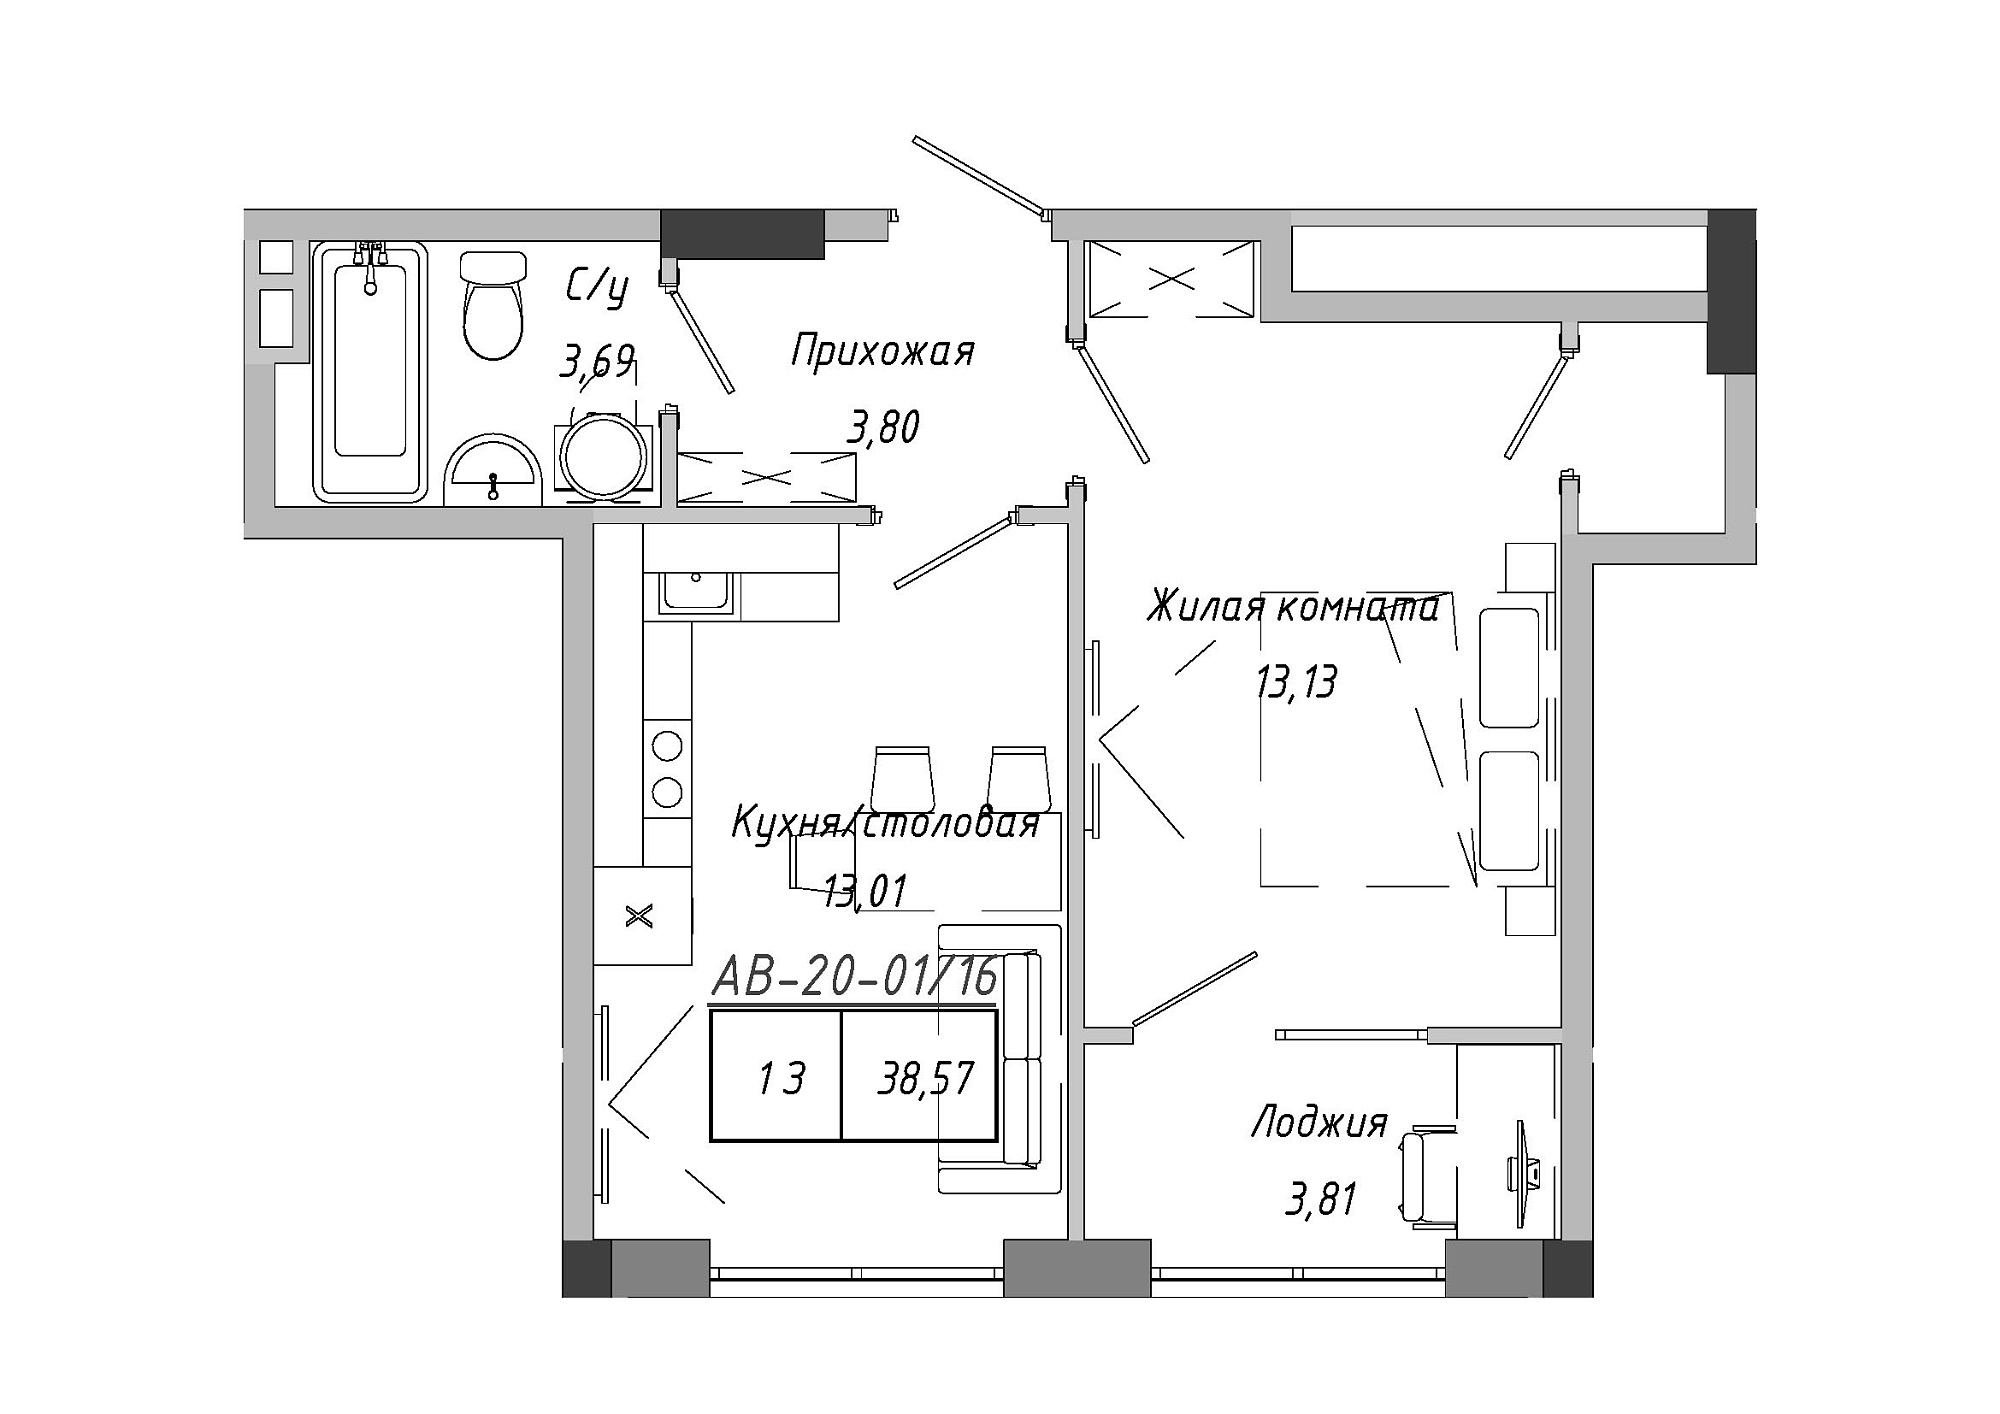 Планировка 1-к квартира площей 38.57м2, AB-20-01/00016.